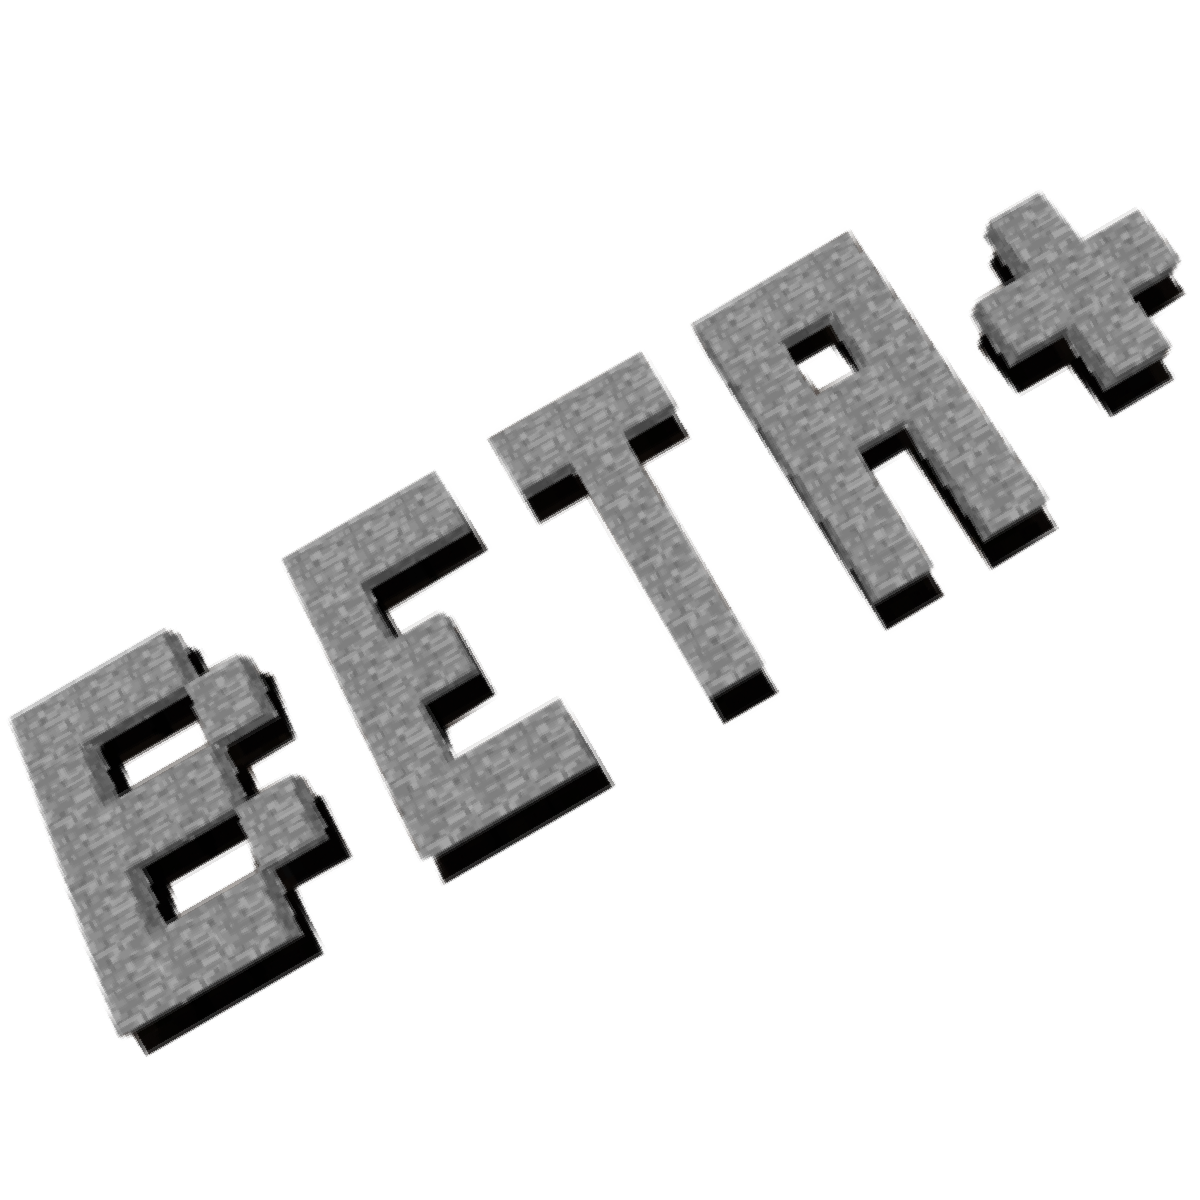 Overview - Beta+ Bukkit - Bukkit Plugins - Projects - Bukkit